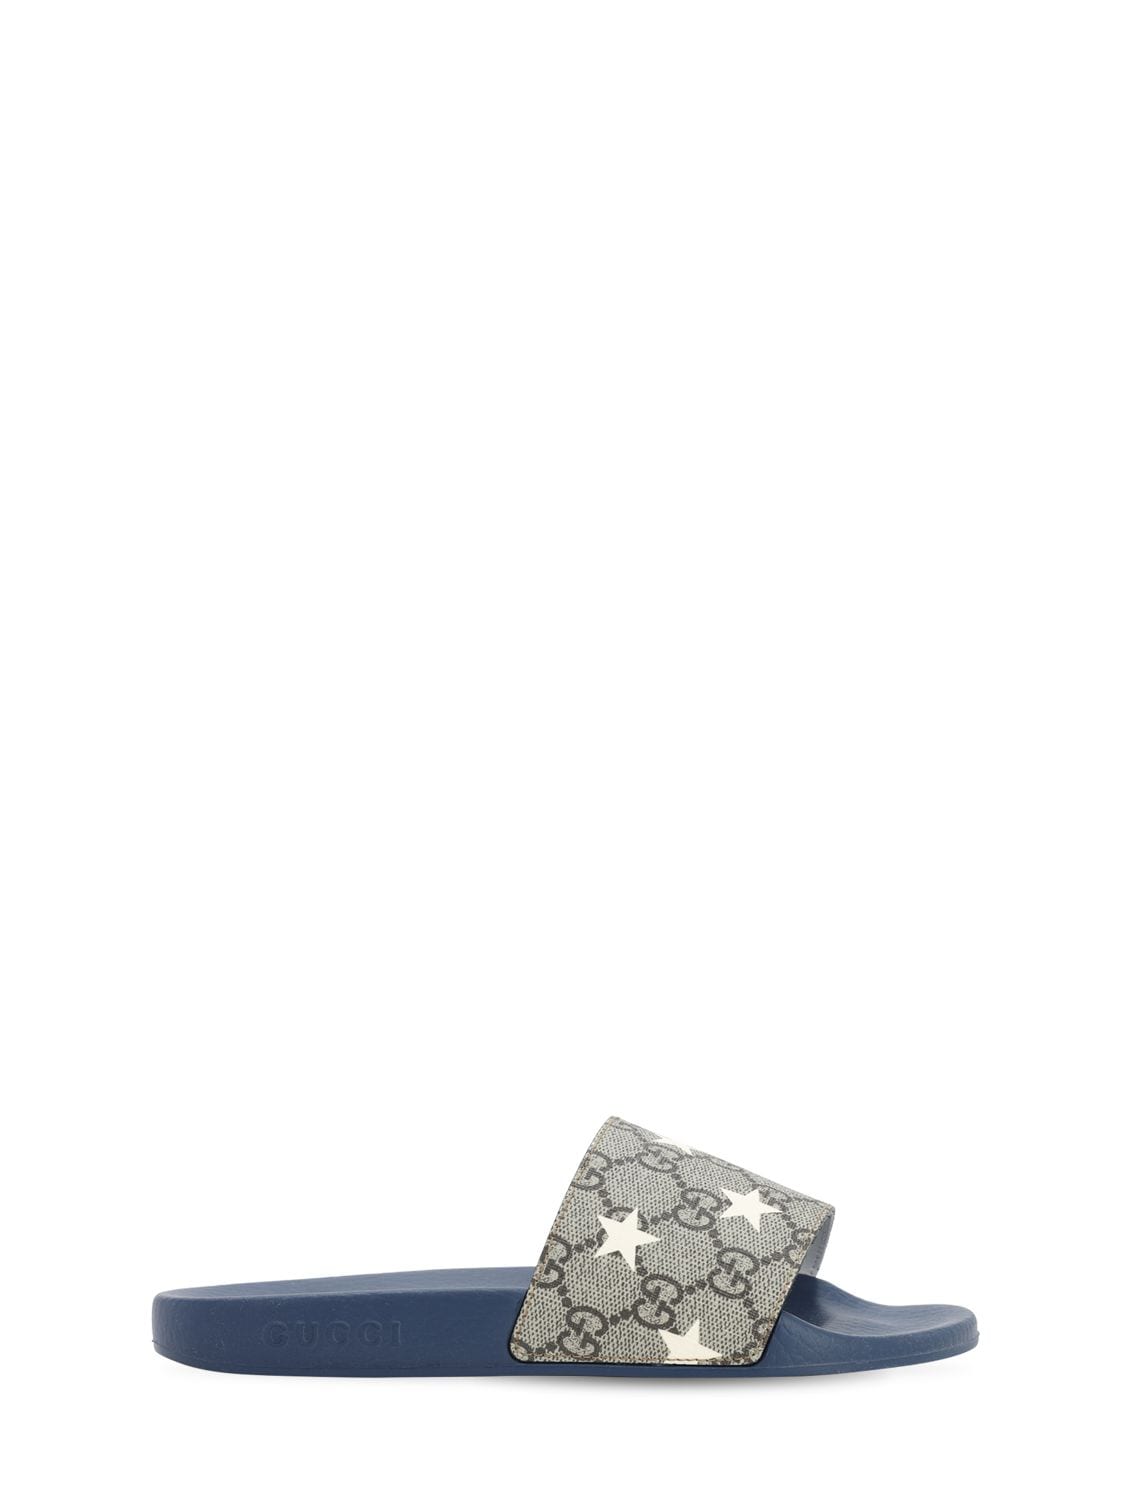 Gucci Kids' Logo Star Print Slide Sandals In Beige,navy